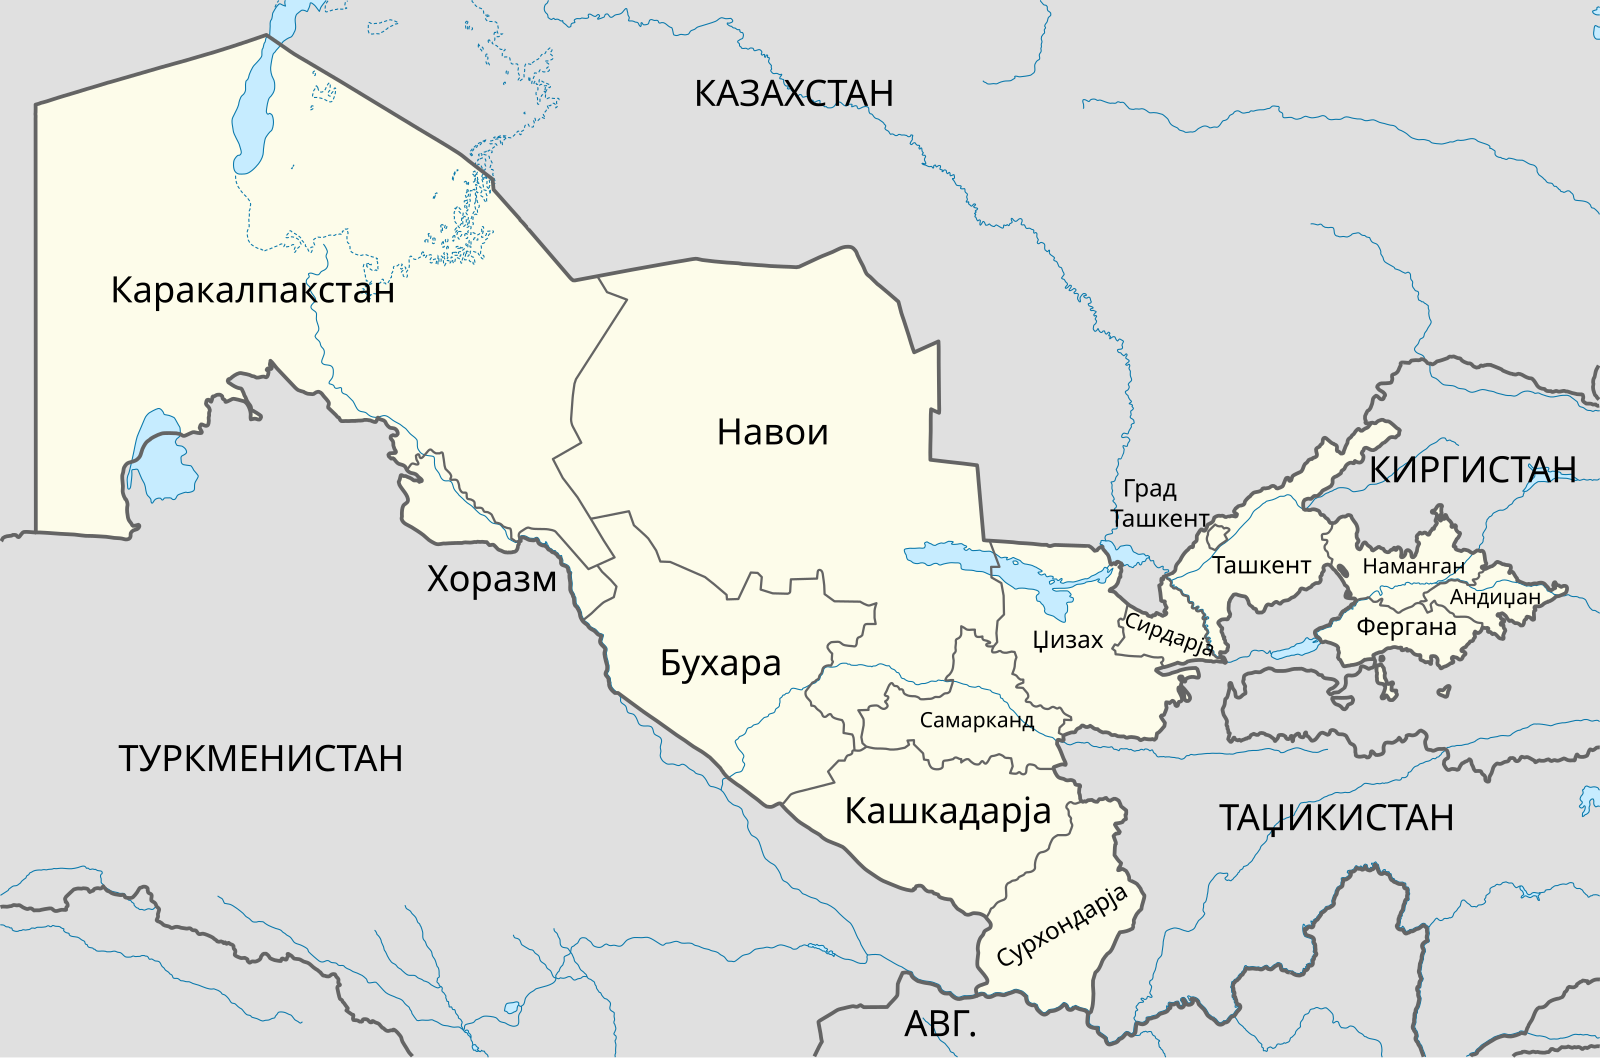 Карта Хорезмской области Узбекистана. Карта Узбекистана на русском языке с городами подробная. Карта Узбекистана с городами на русском языке.